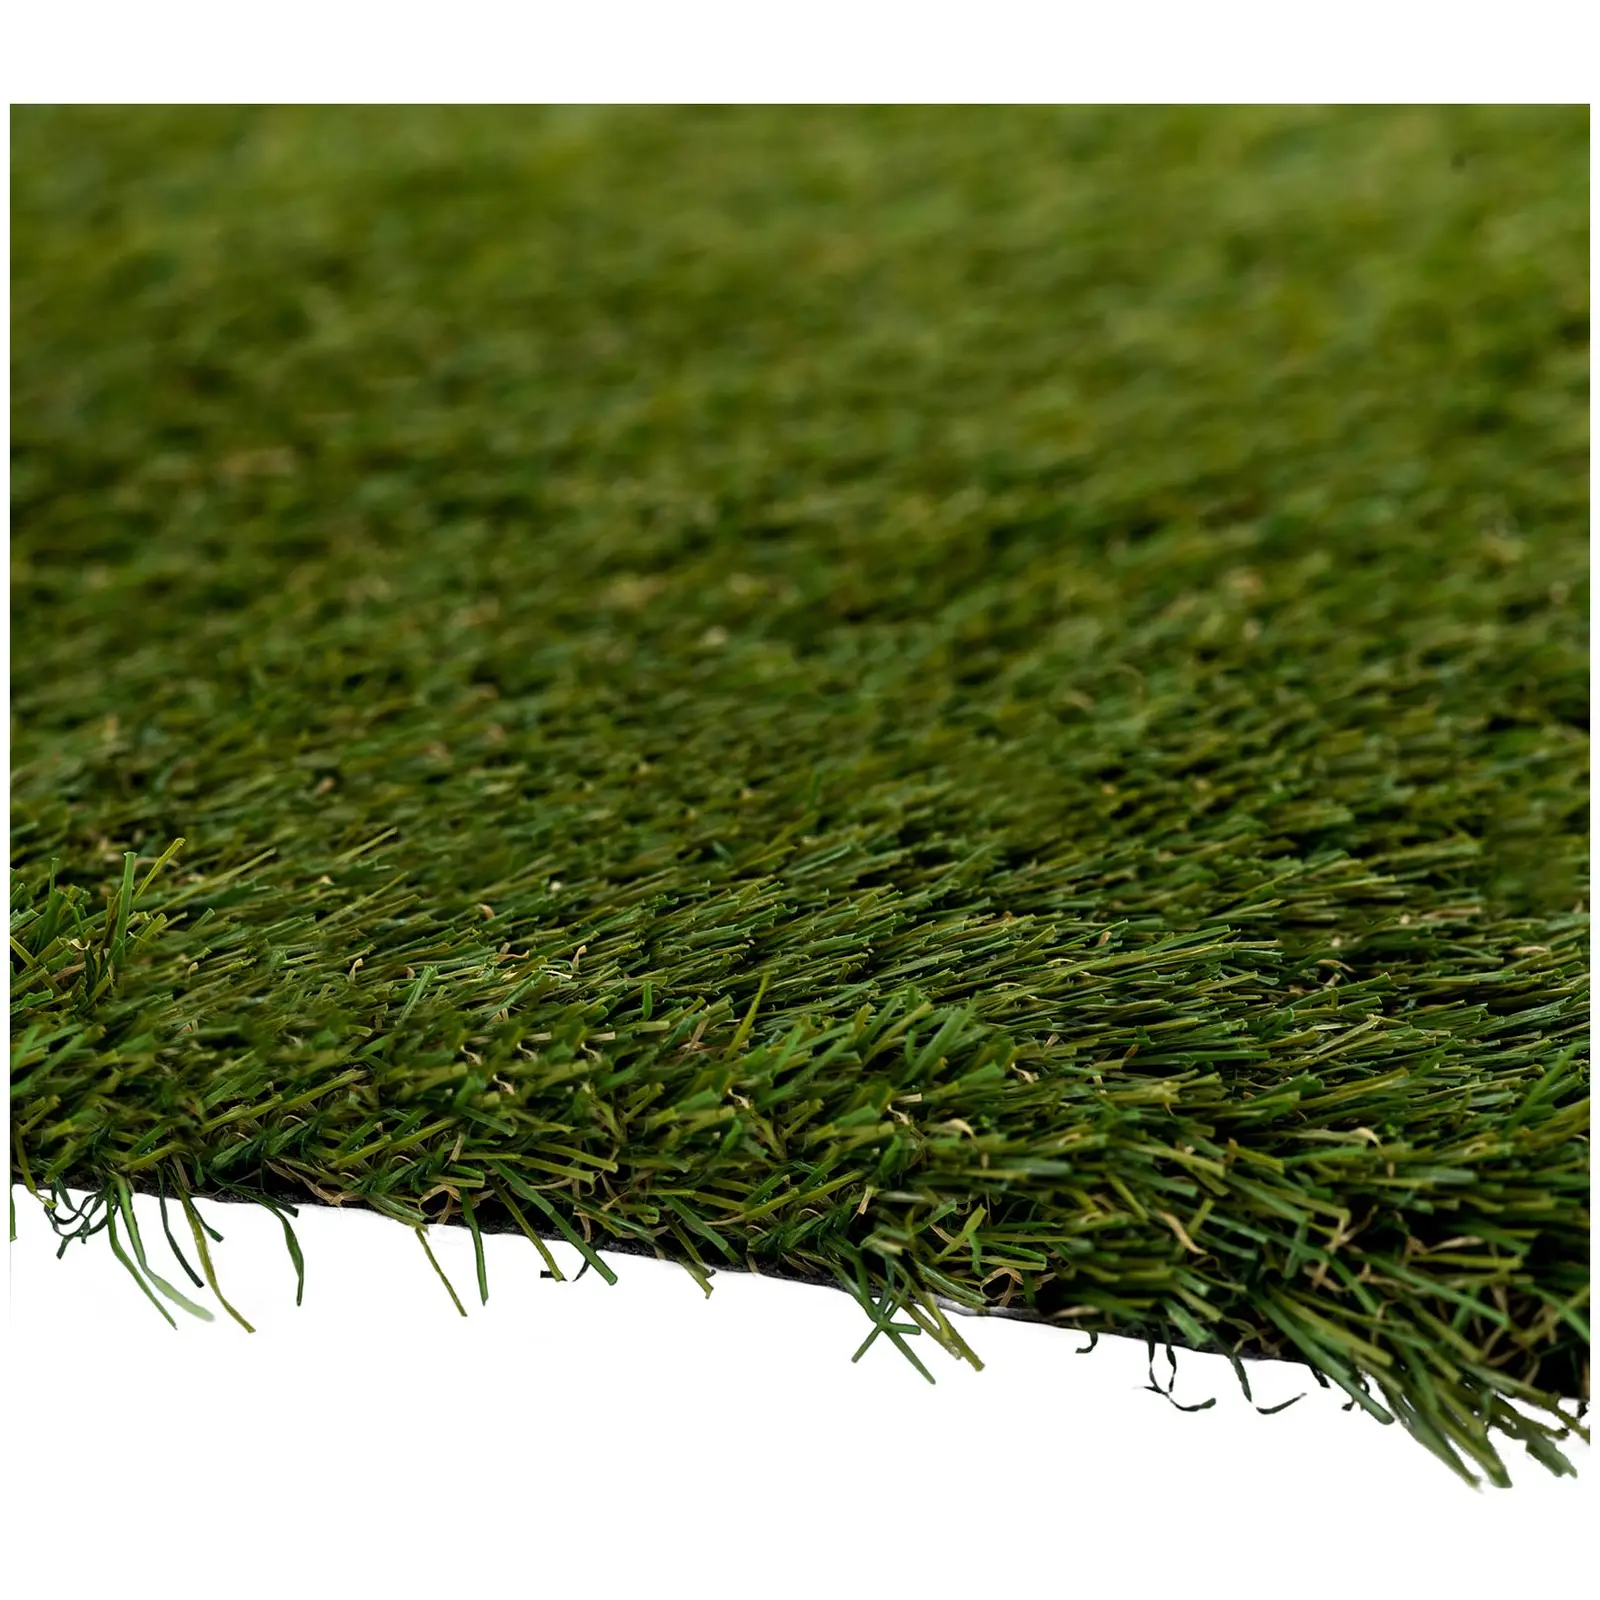 Sztuczna trawa - 403 x 200 cm - wysokość: 30 mm - szybkość ściegu: 20/10 cm - odporność na promieniowanie UV